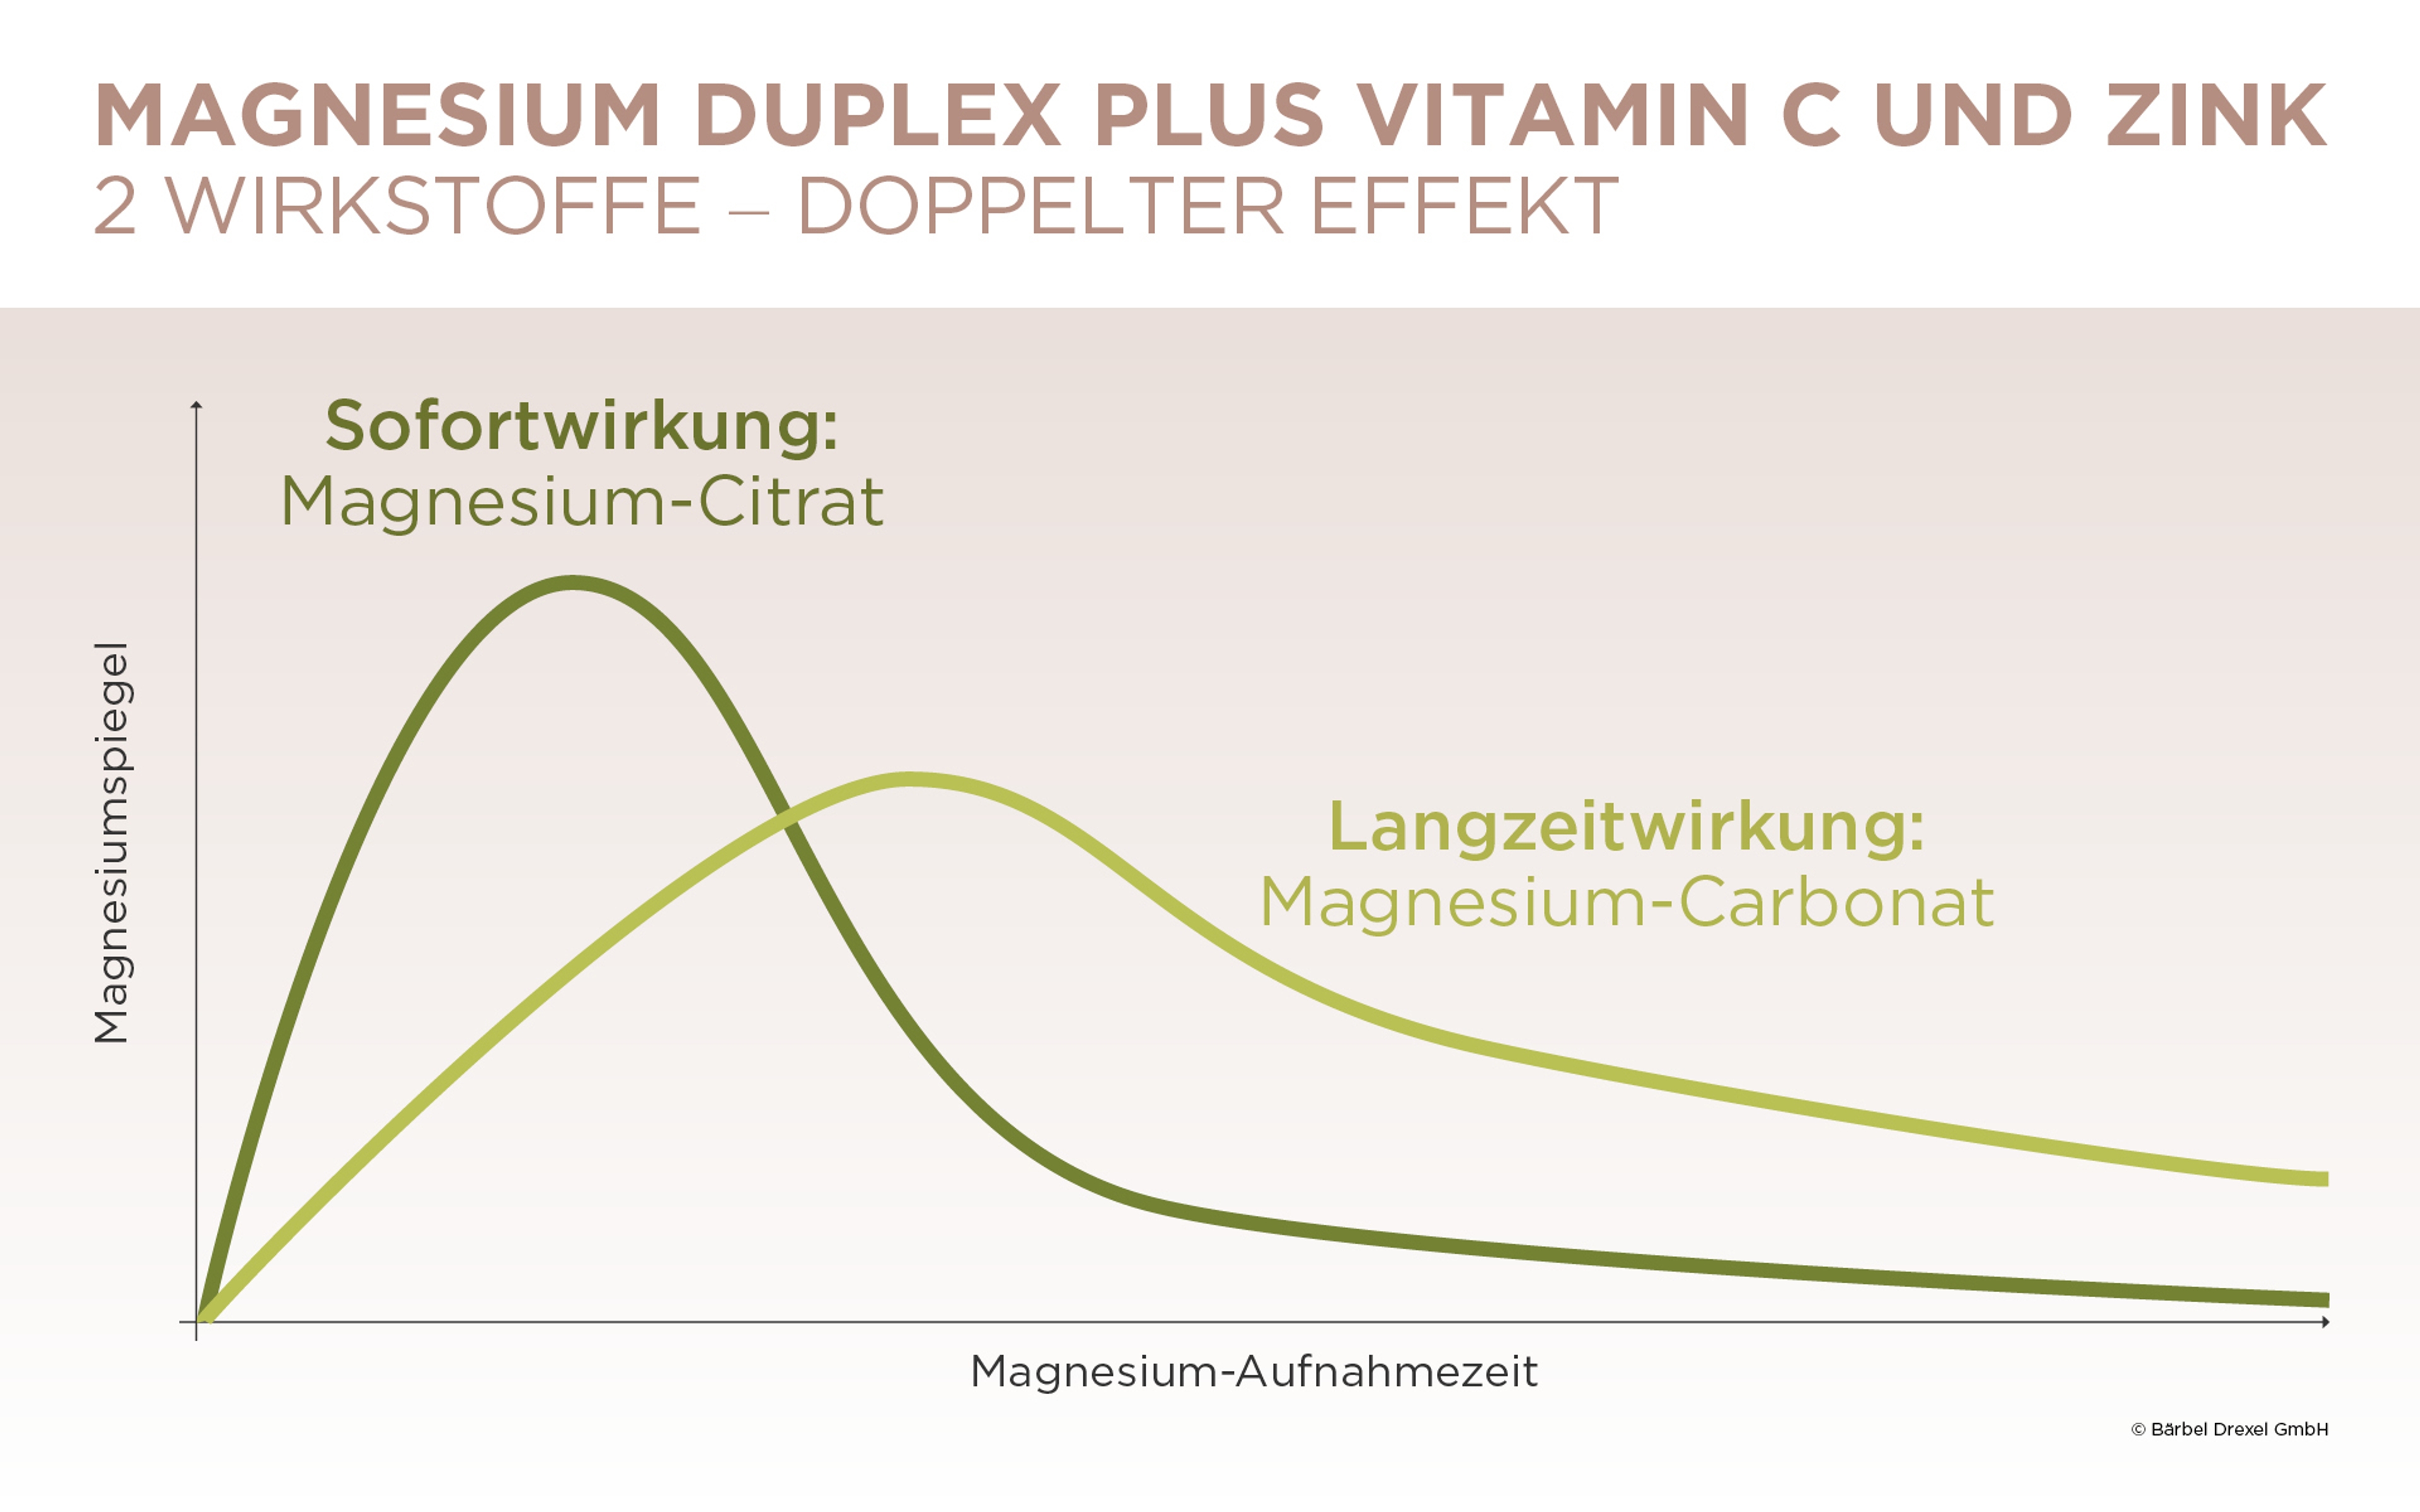 ST_Magnesium Duplex Plus Vitamin C und Zink_Grafik-Duplex-Wirkung_275870.jpg